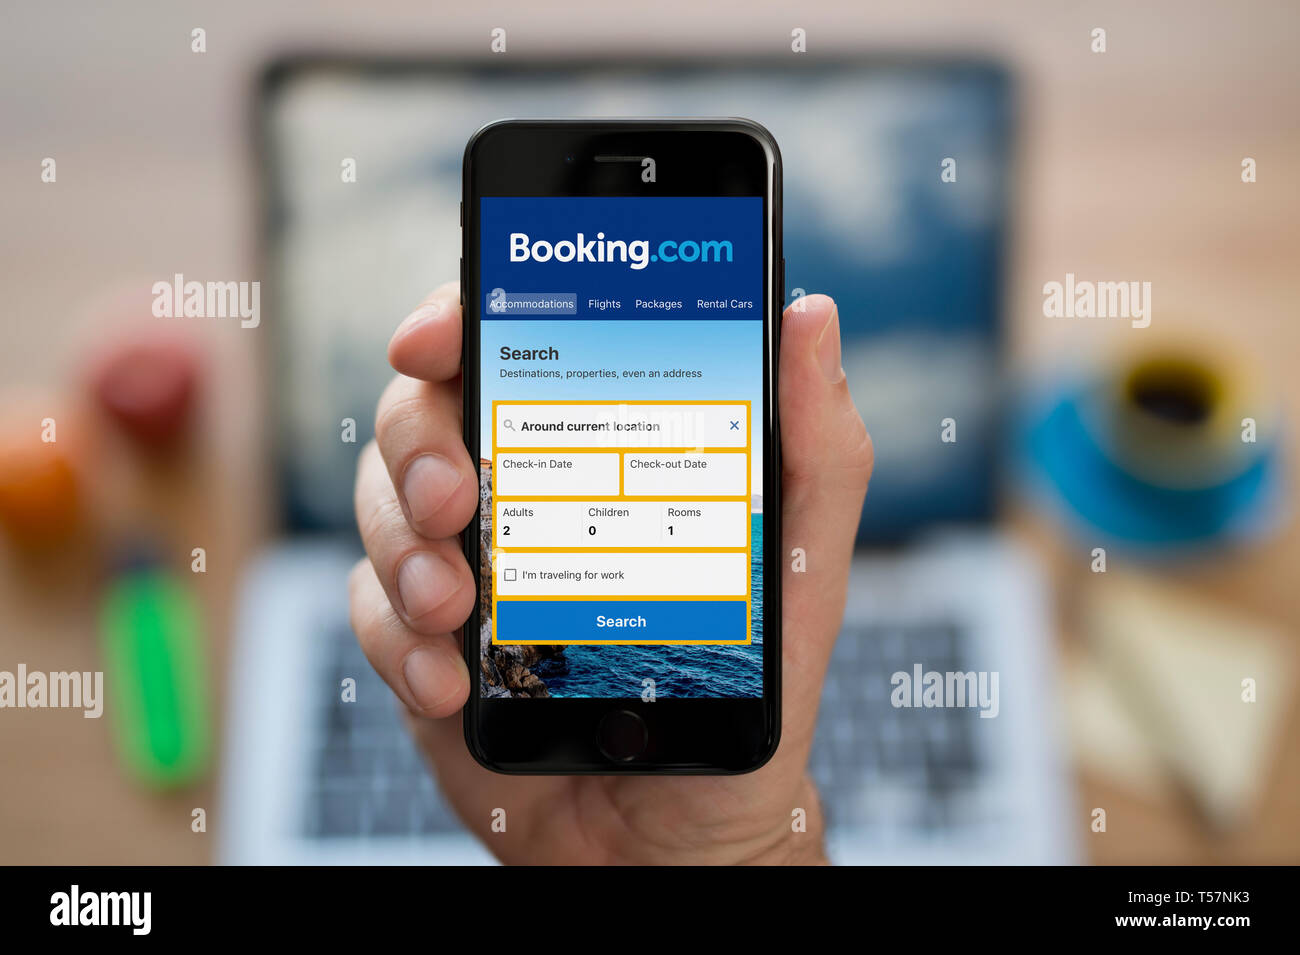 Ein Mann schaut auf seinem iPhone zeigt die Booking.com Logo (nur redaktionelle Nutzung). Stockfoto